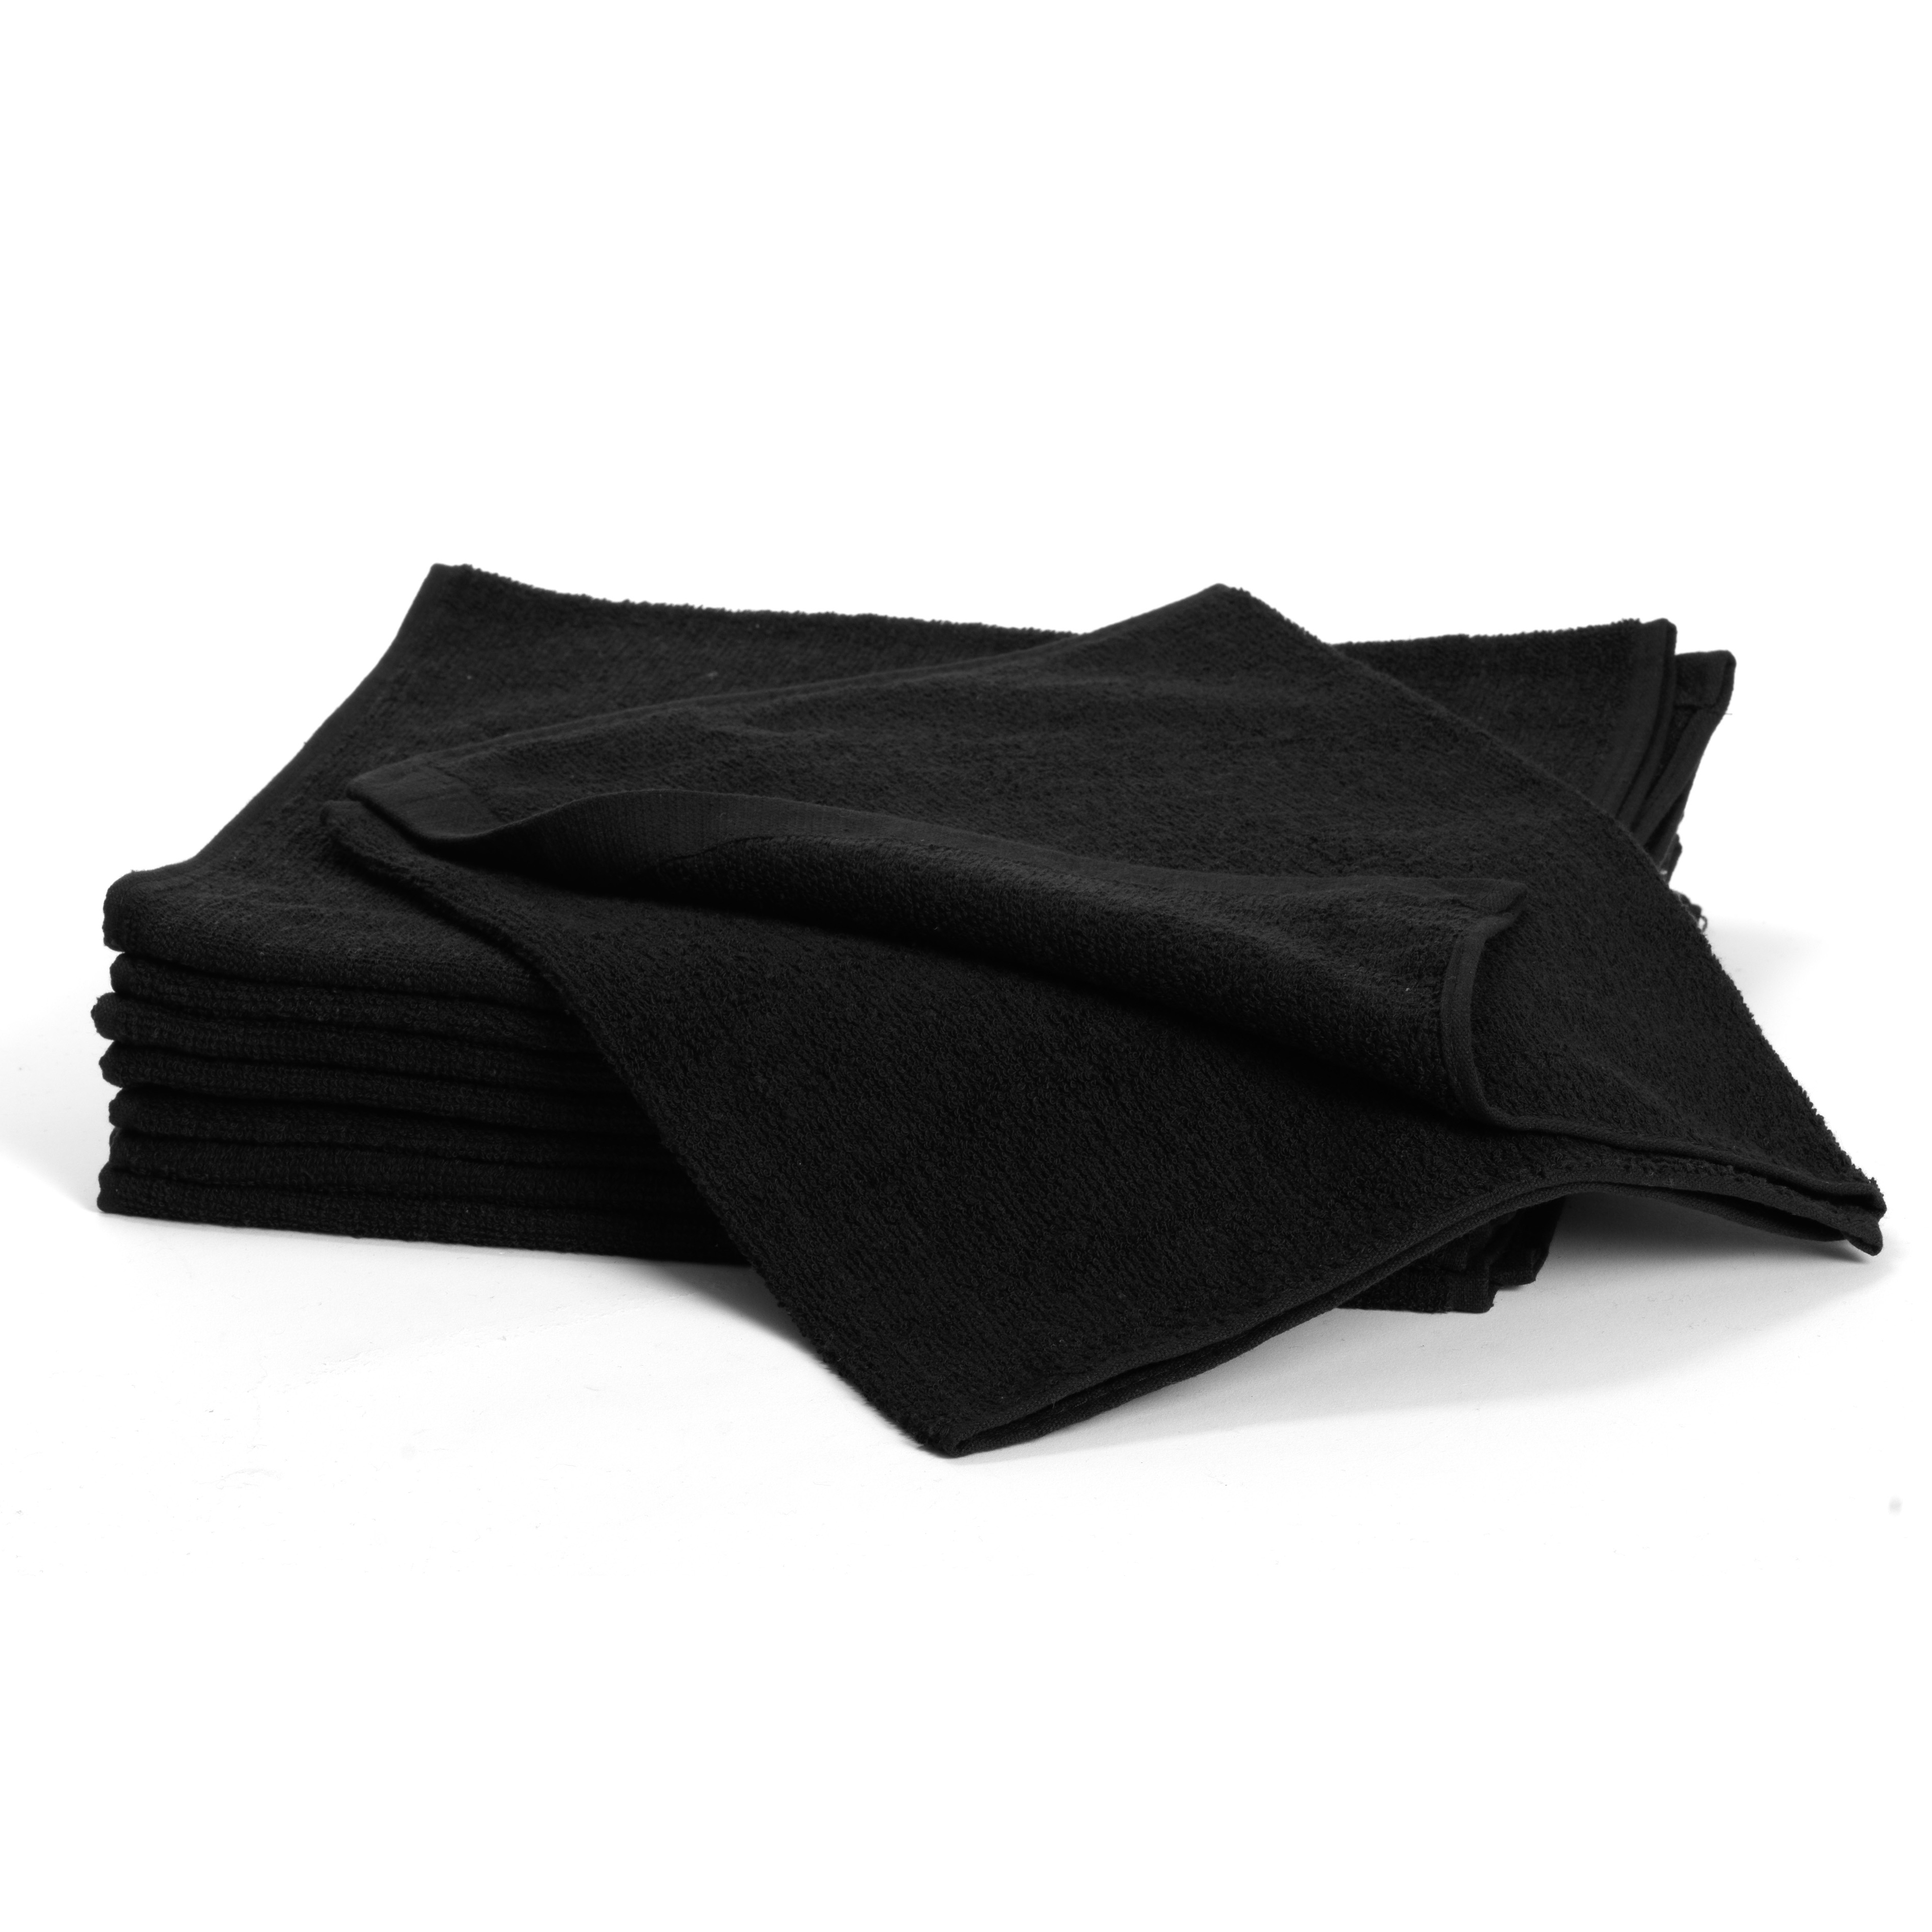 Cotton Towels, black 5097 - bavlněný ručník, černý, 34 x 82 cm, 1 ks